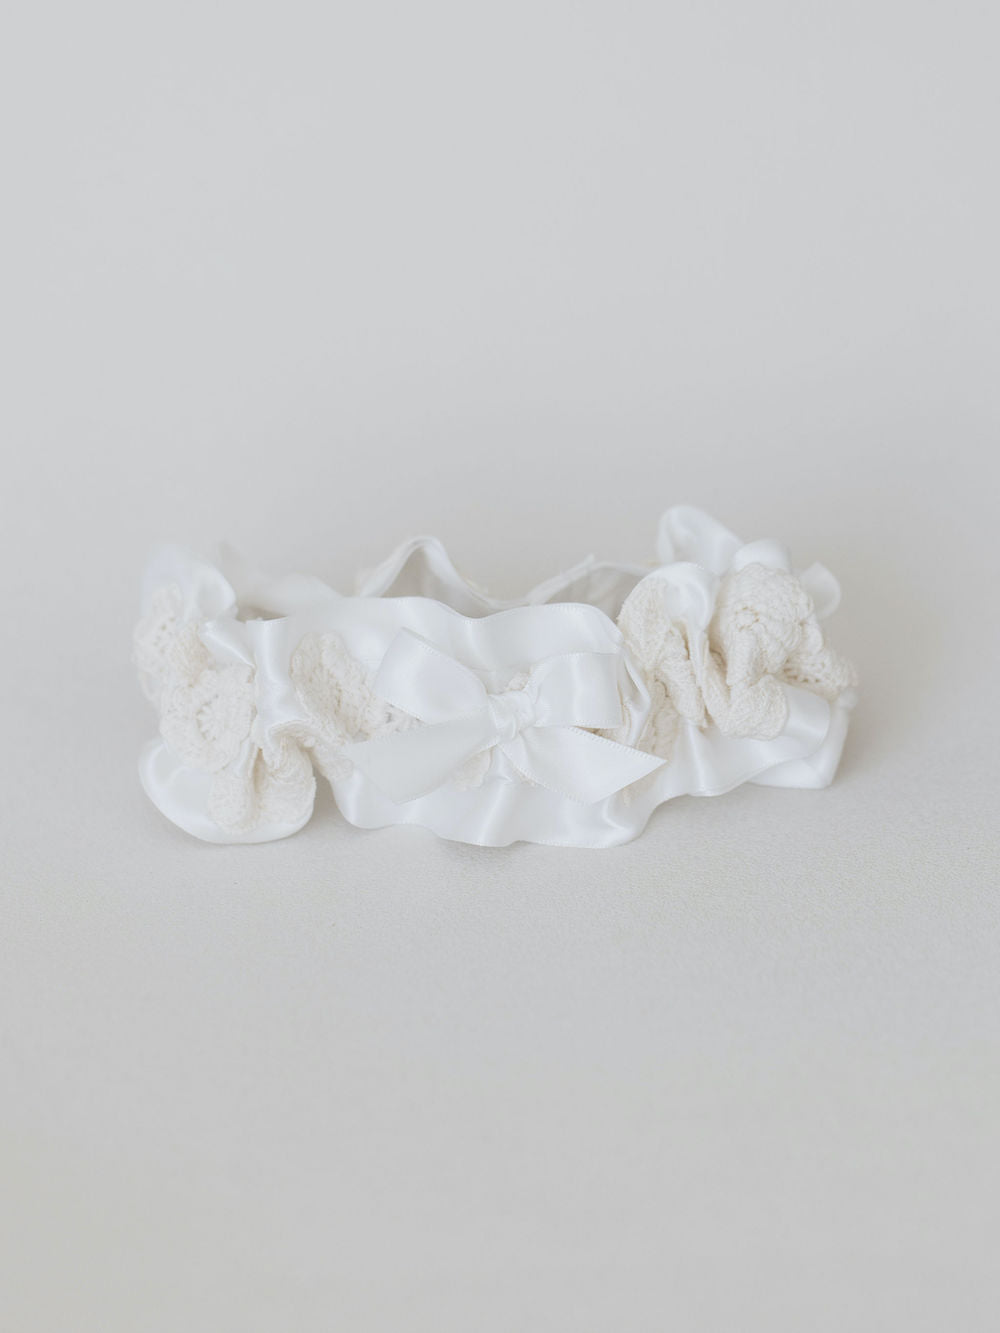 wedding garter & handkerchiefs handmade from grandmother's wedding dress lace by expert heirloom designer, The Garter Girl